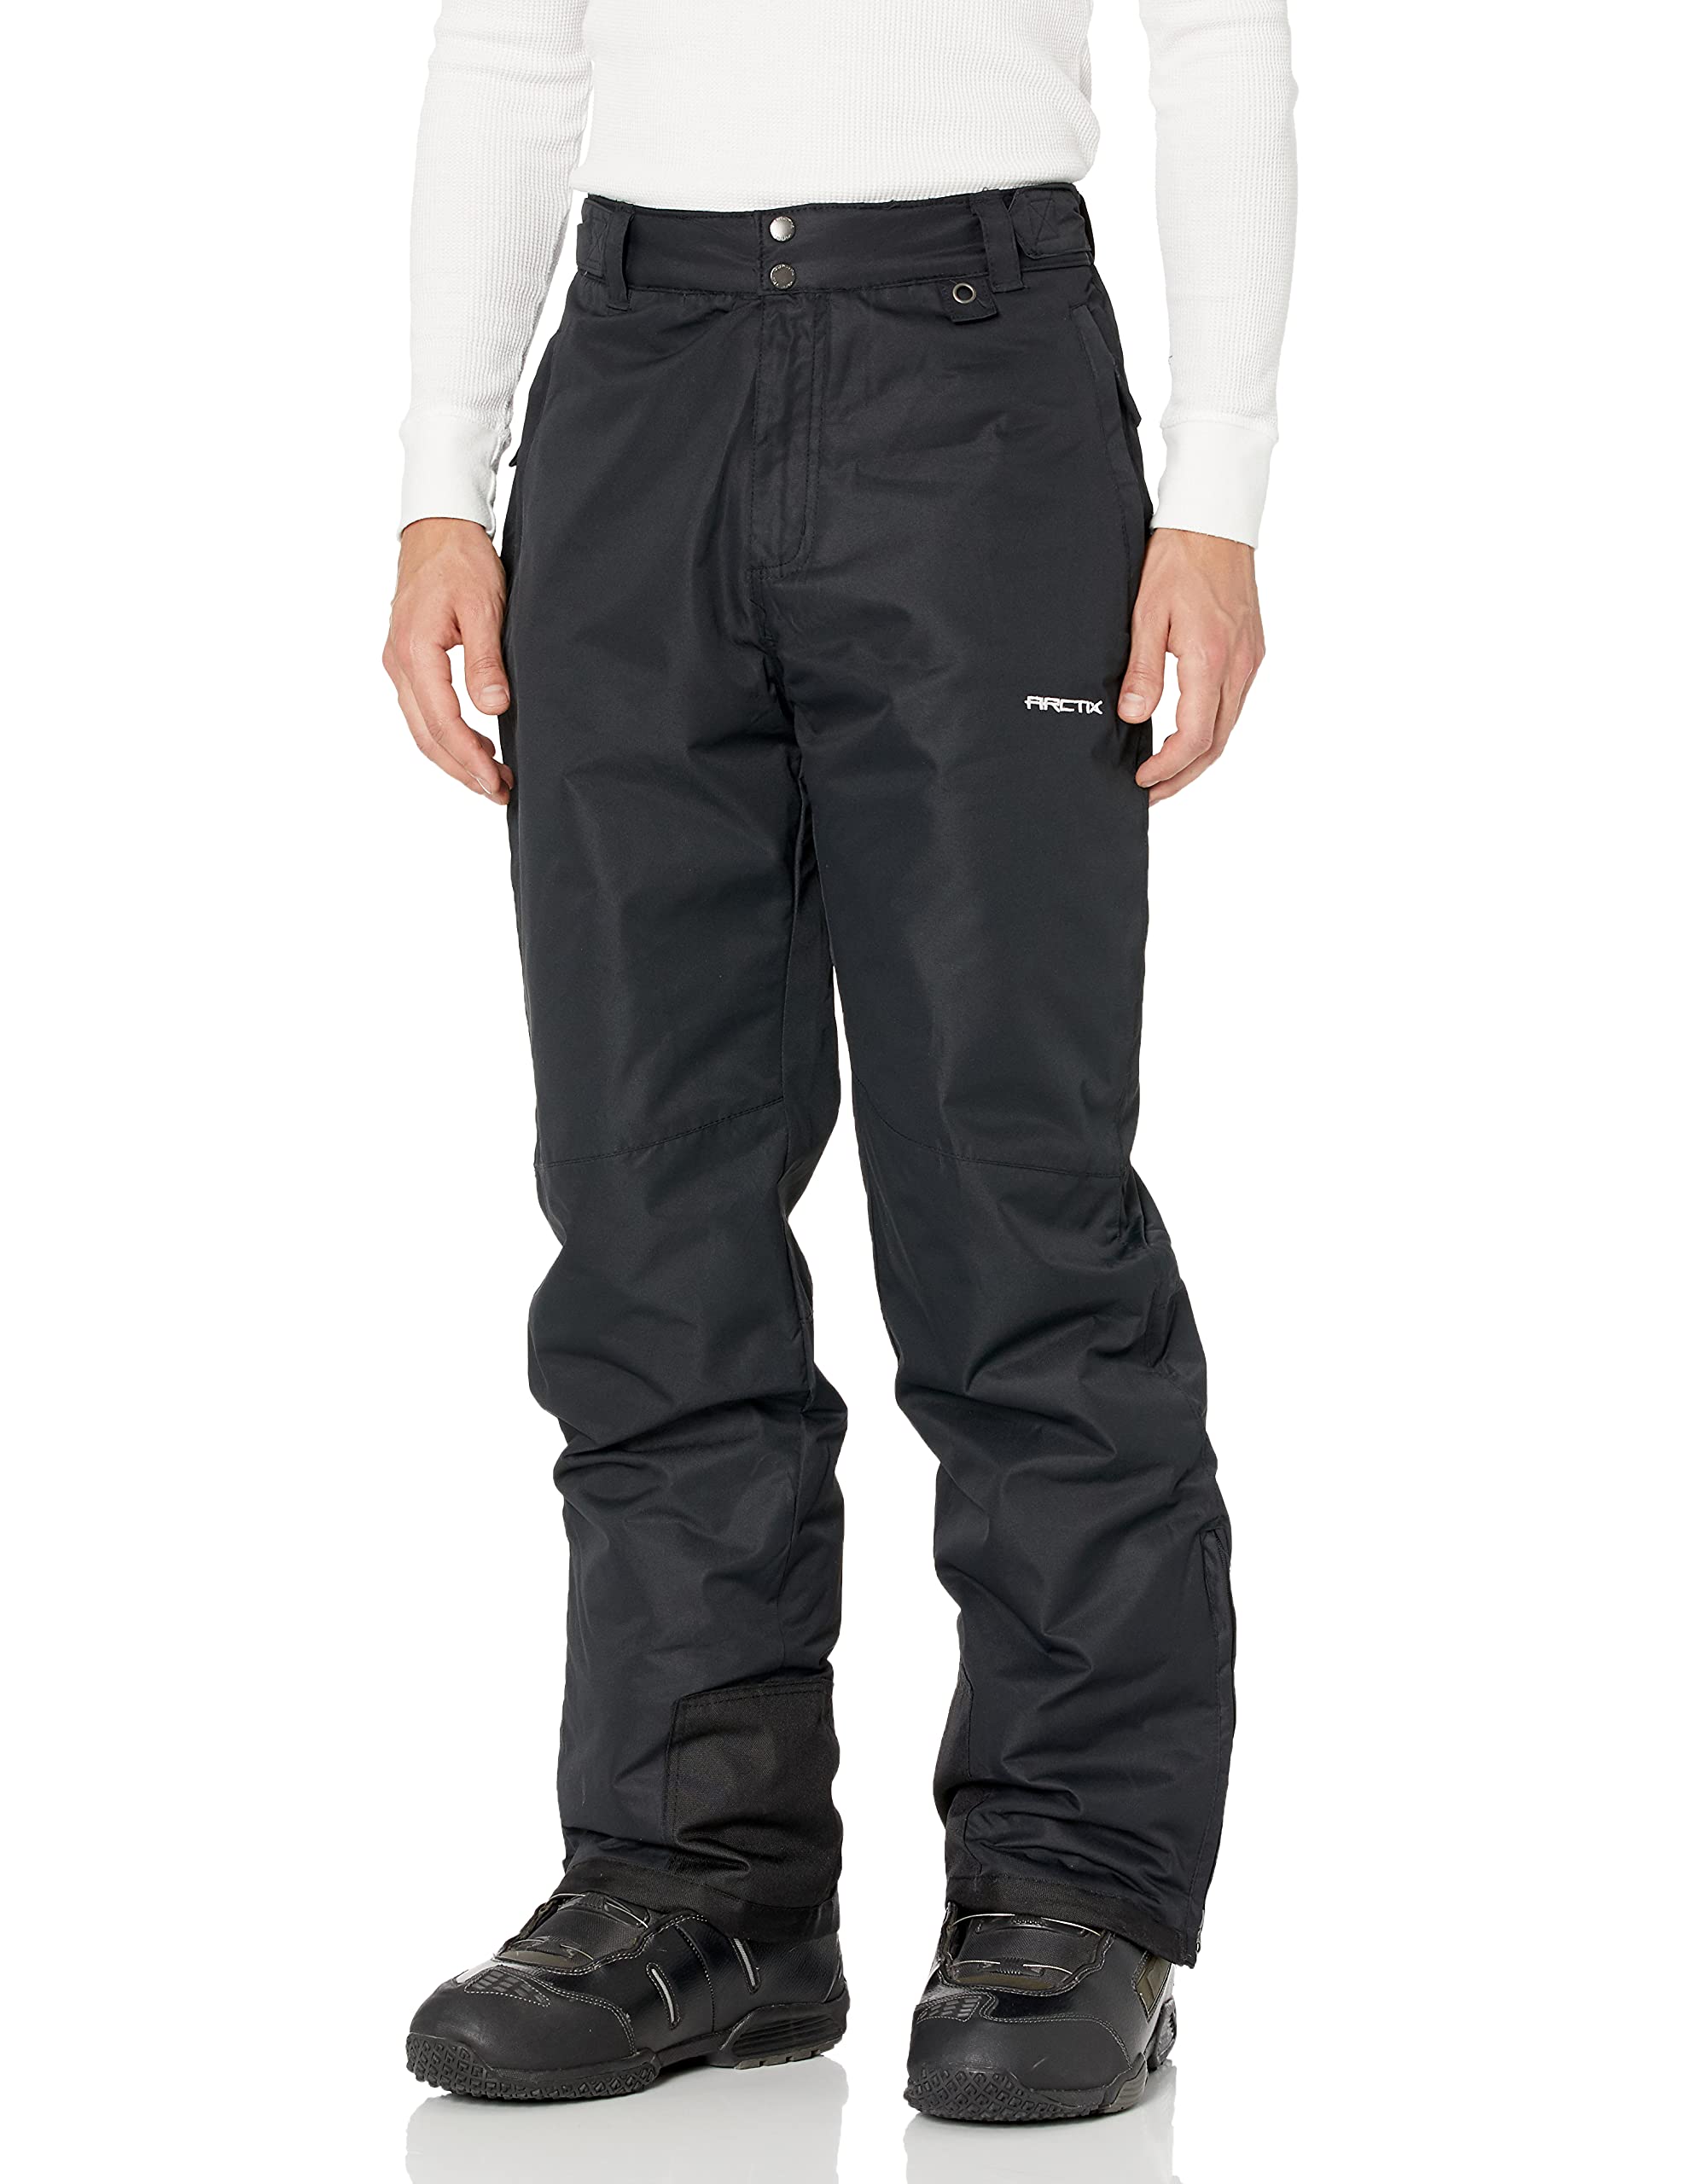 Arctix Men's Essential Snow Pants 32 - Black / Medium/32 Inseam